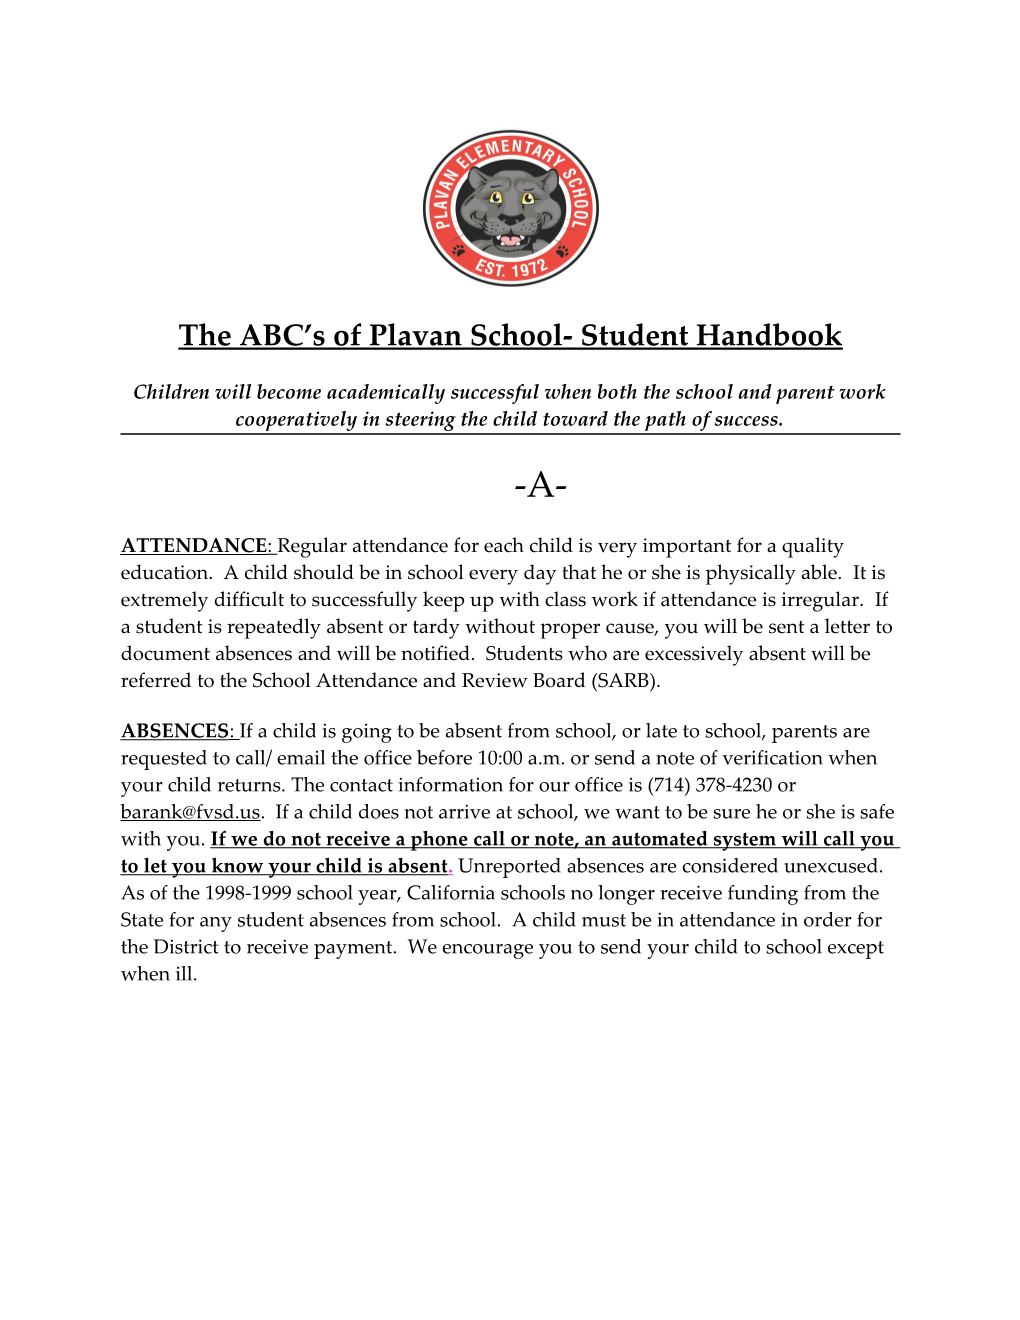 The ABC S of Plavan School- Student Handbook